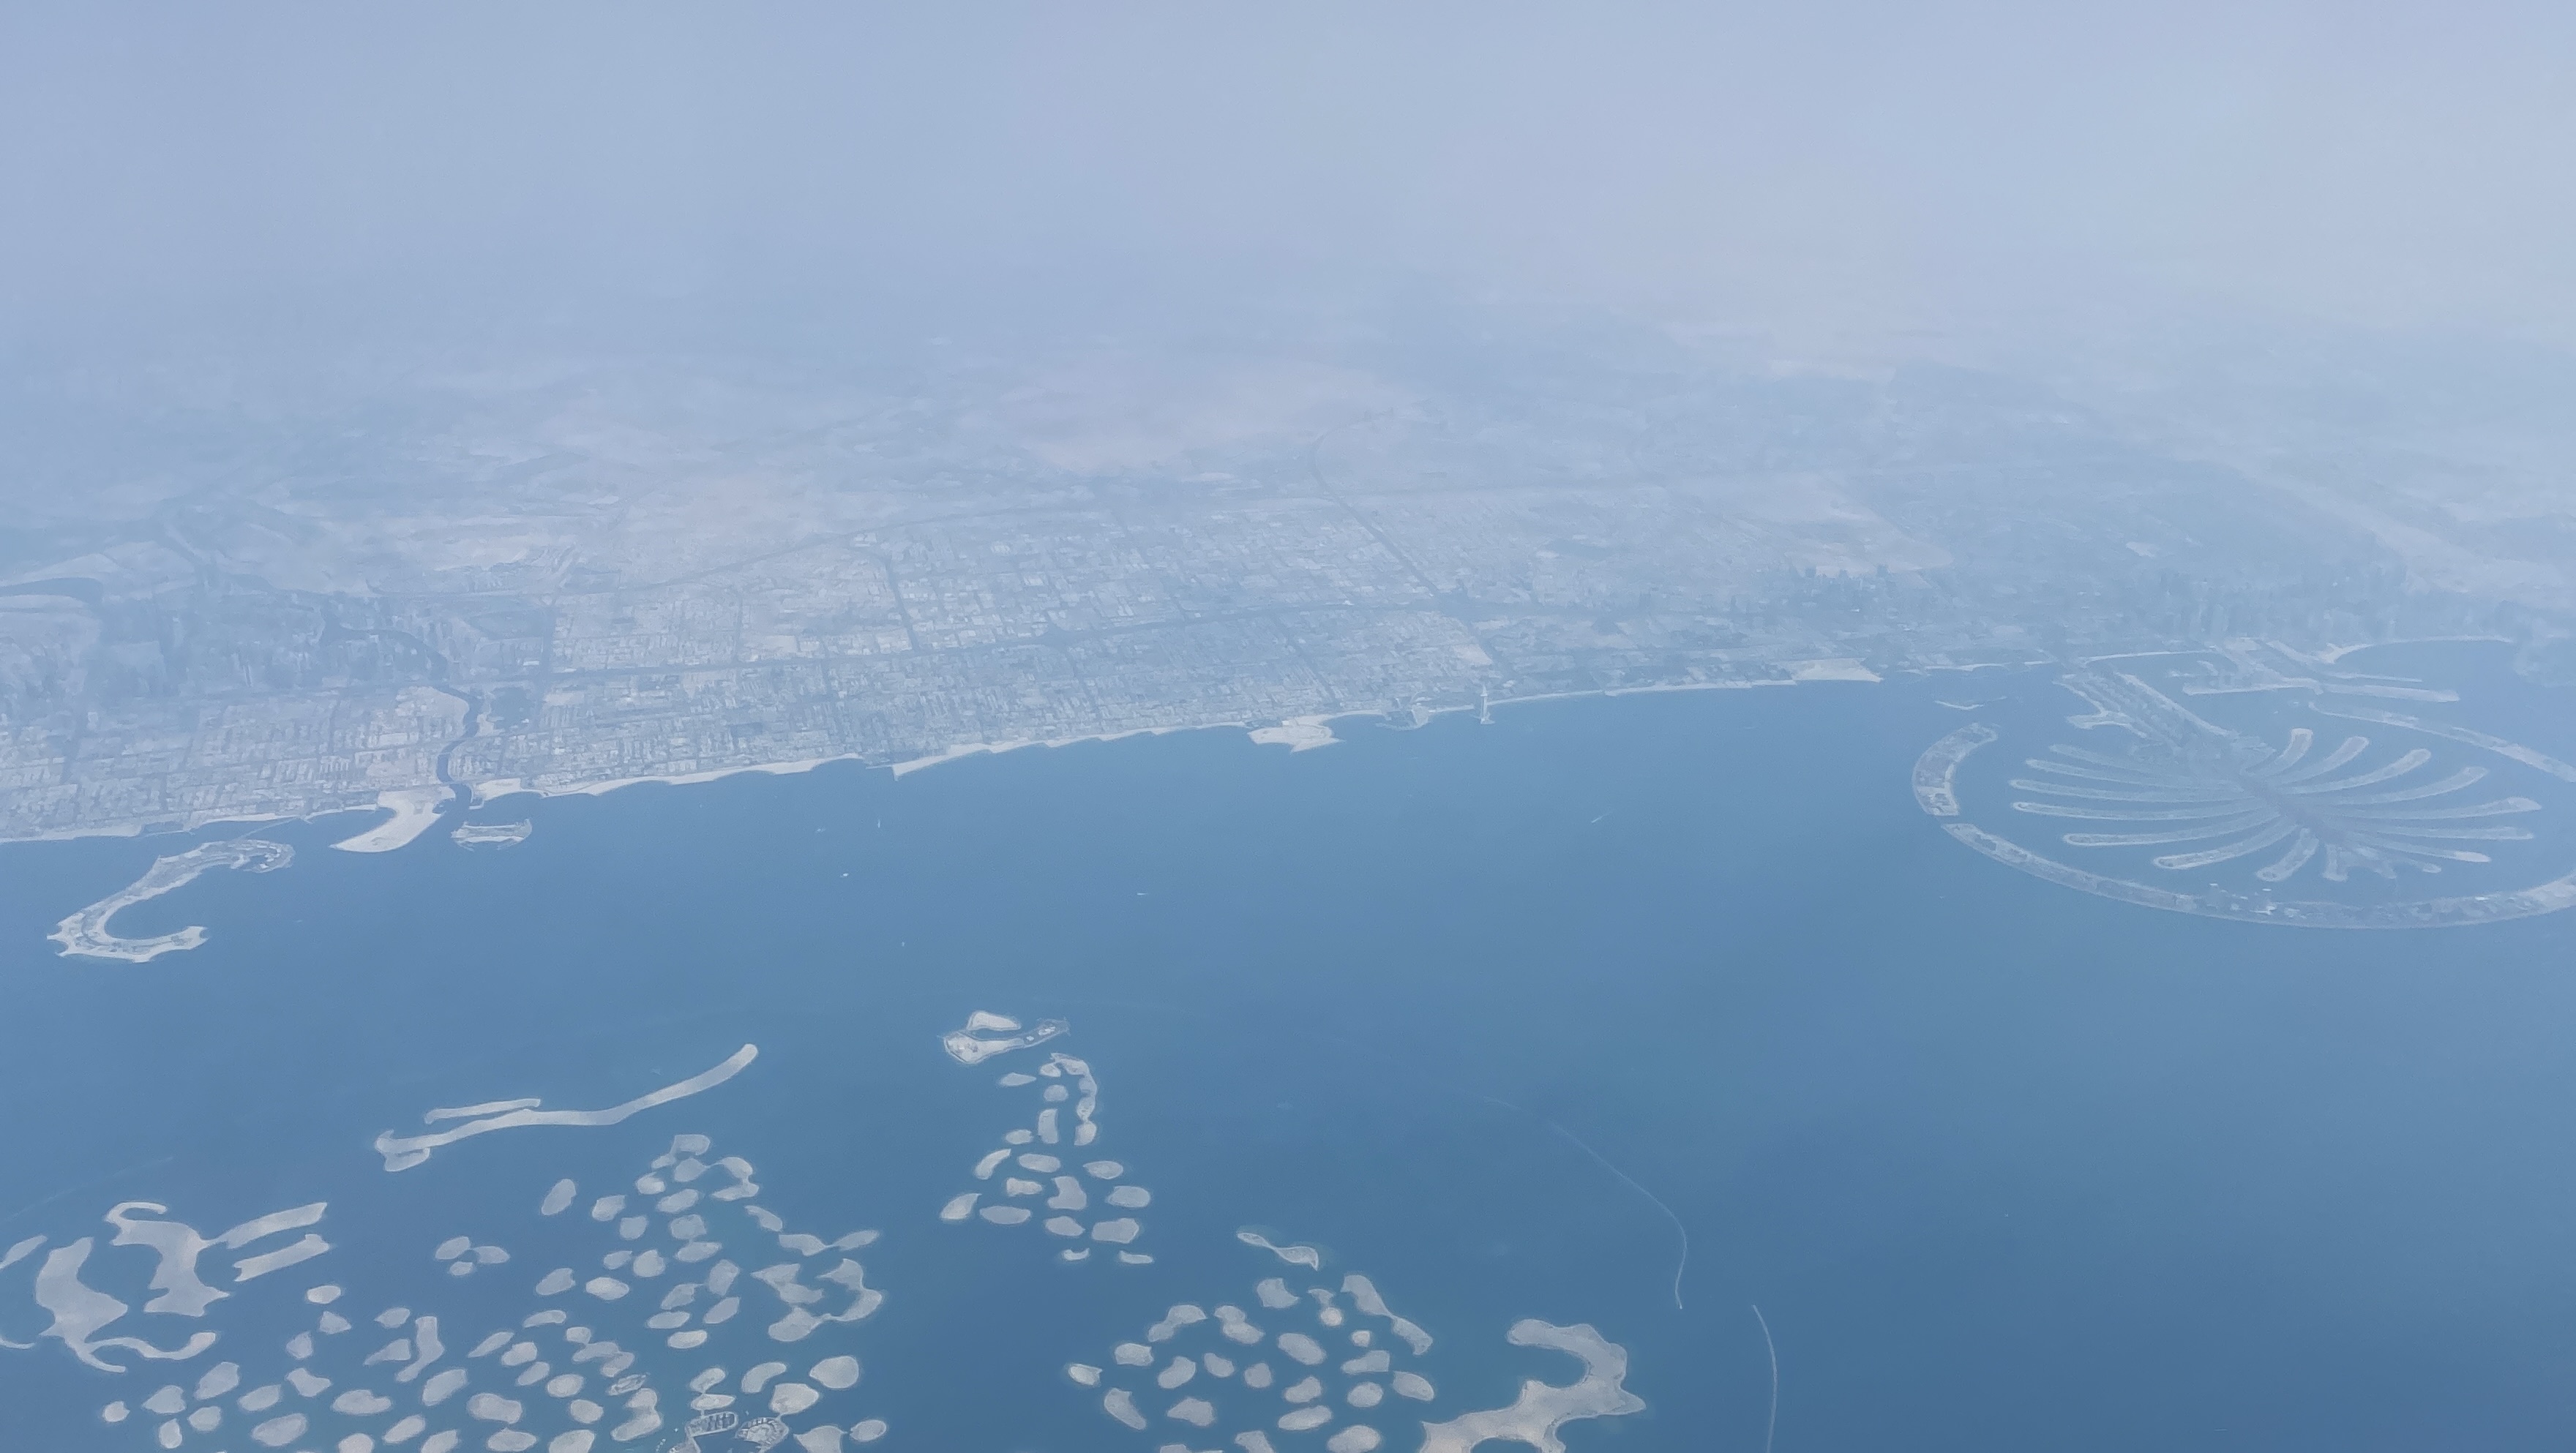 Flying over Dubai